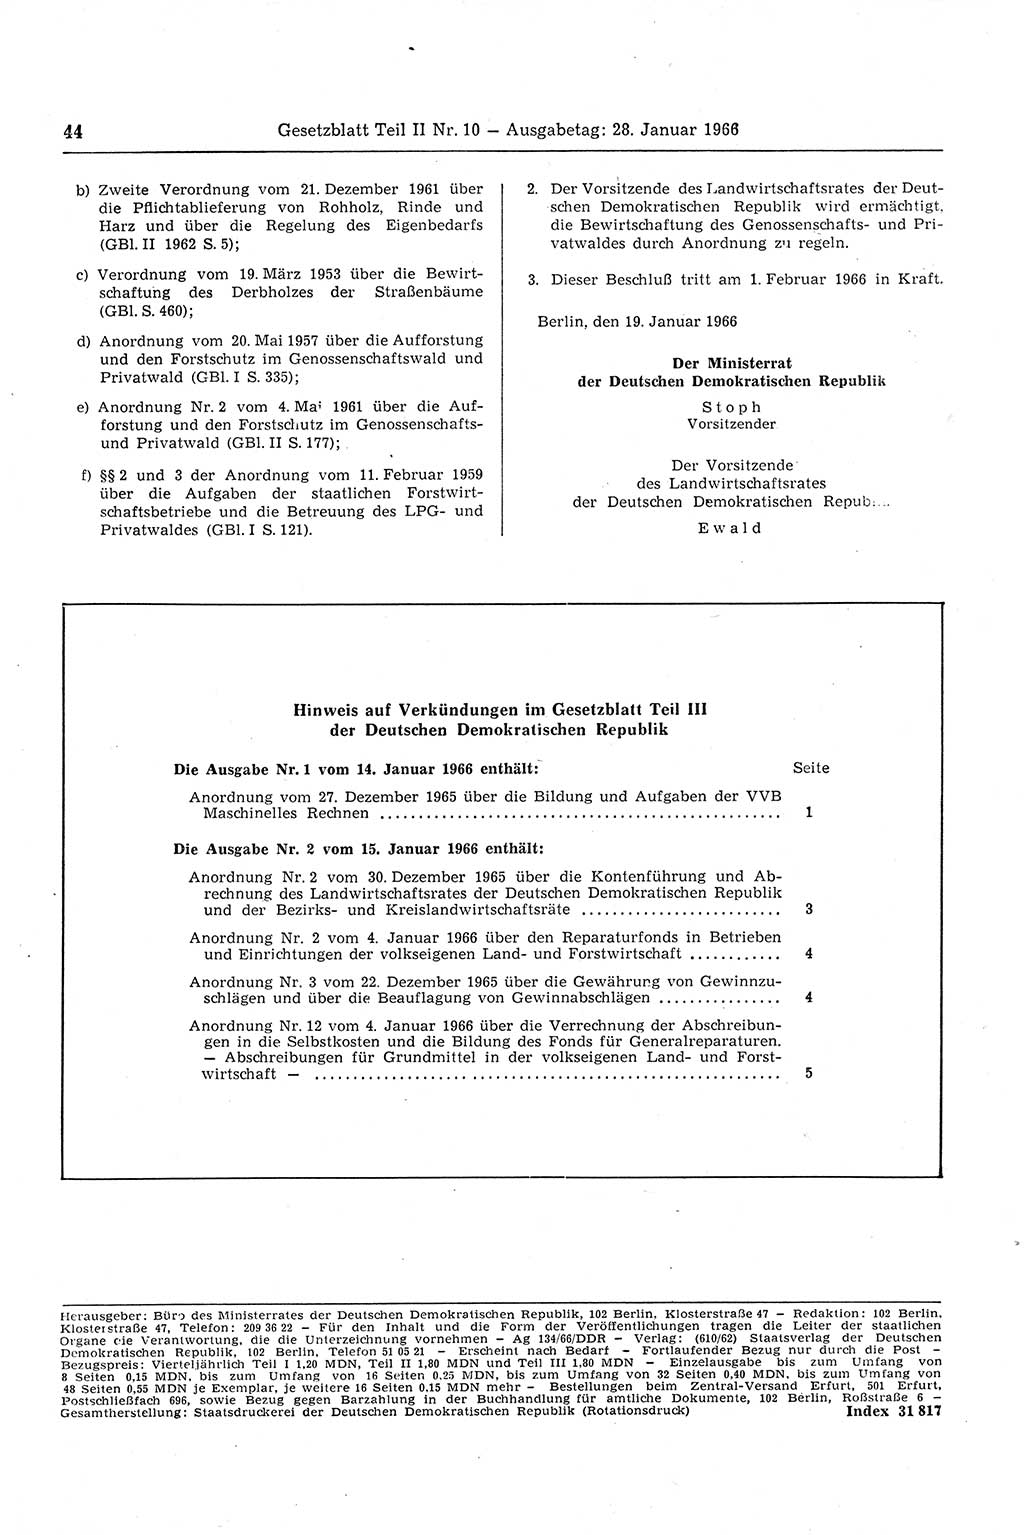 Gesetzblatt (GBl.) der Deutschen Demokratischen Republik (DDR) Teil ⅠⅠ 1966, Seite 44 (GBl. DDR ⅠⅠ 1966, S. 44)